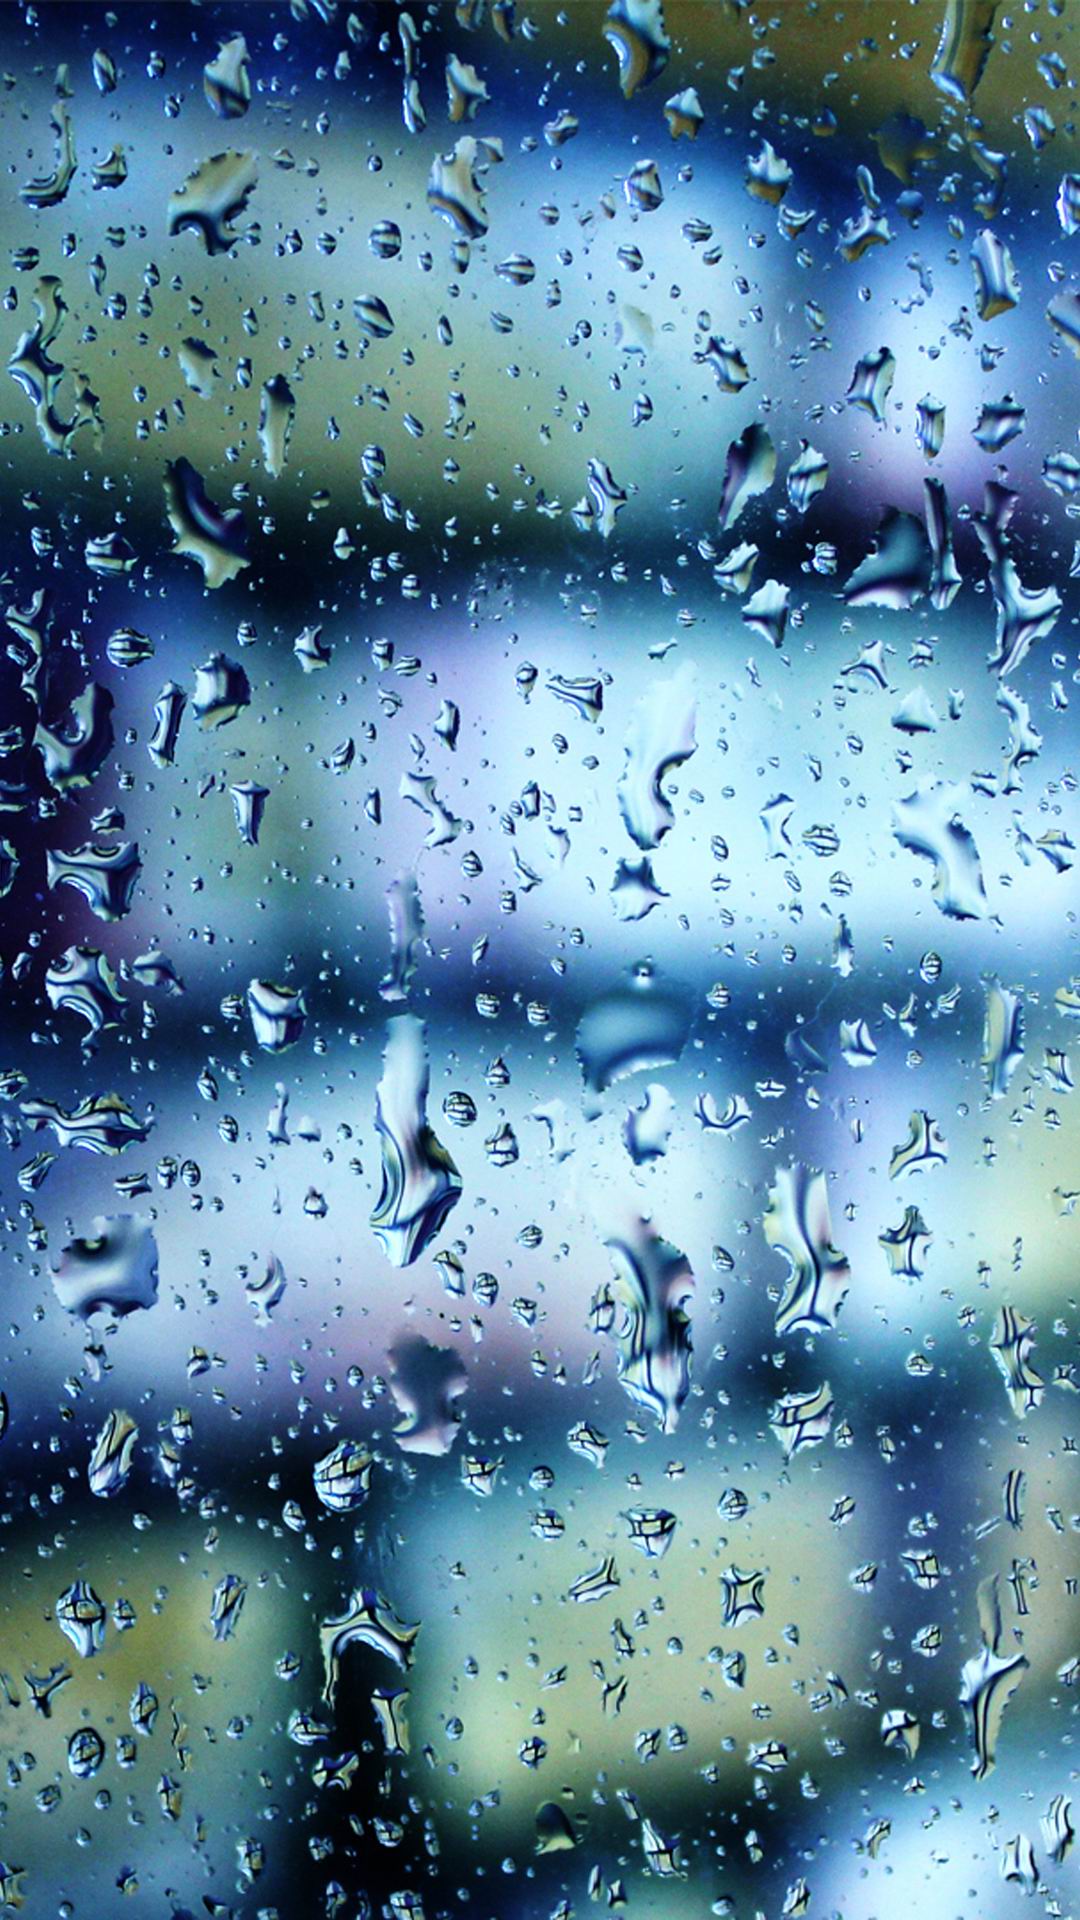 雨滴落在玻璃上的唯美手机壁纸图片